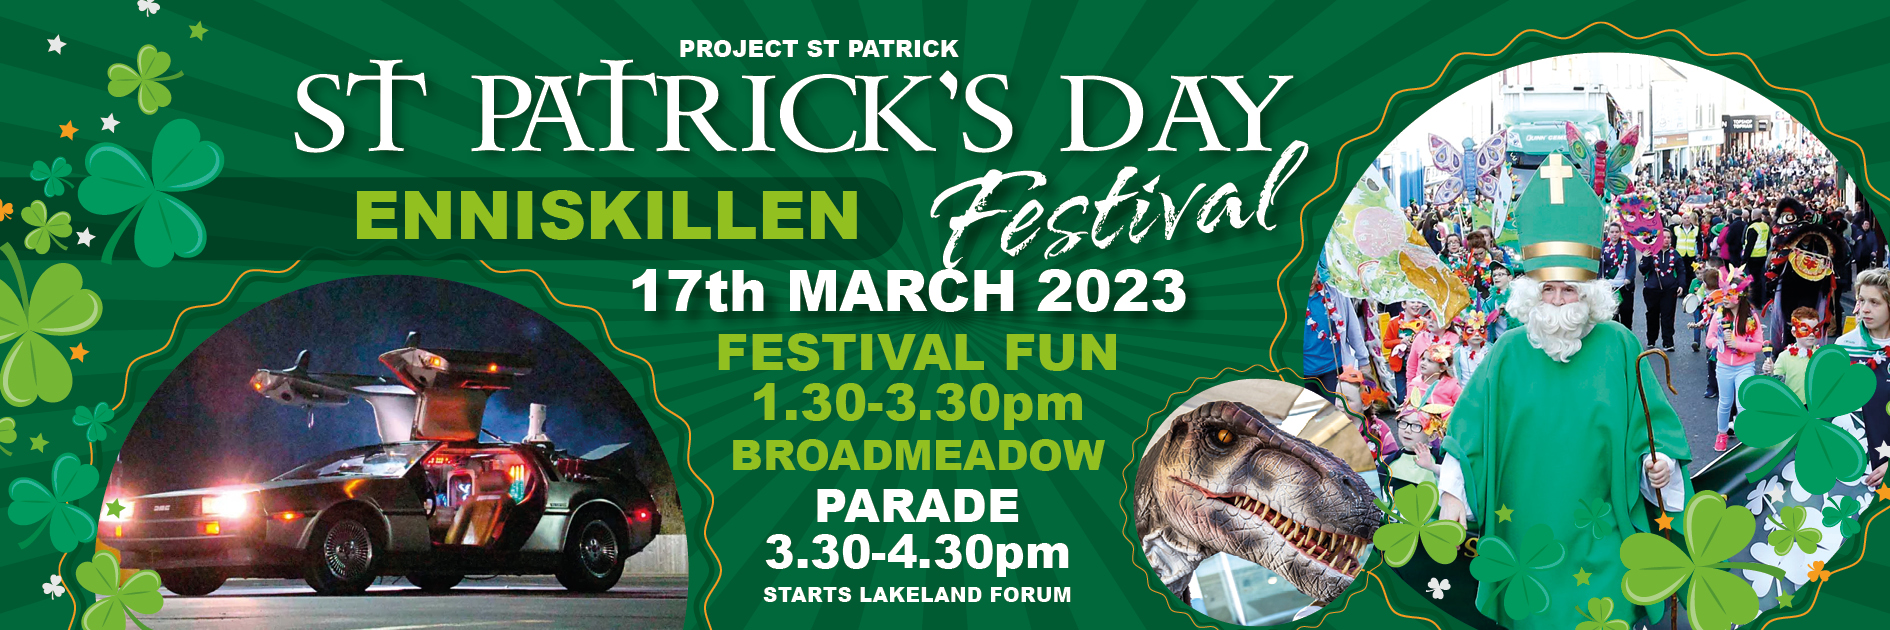 St Patricks Day Enniskillen 2023